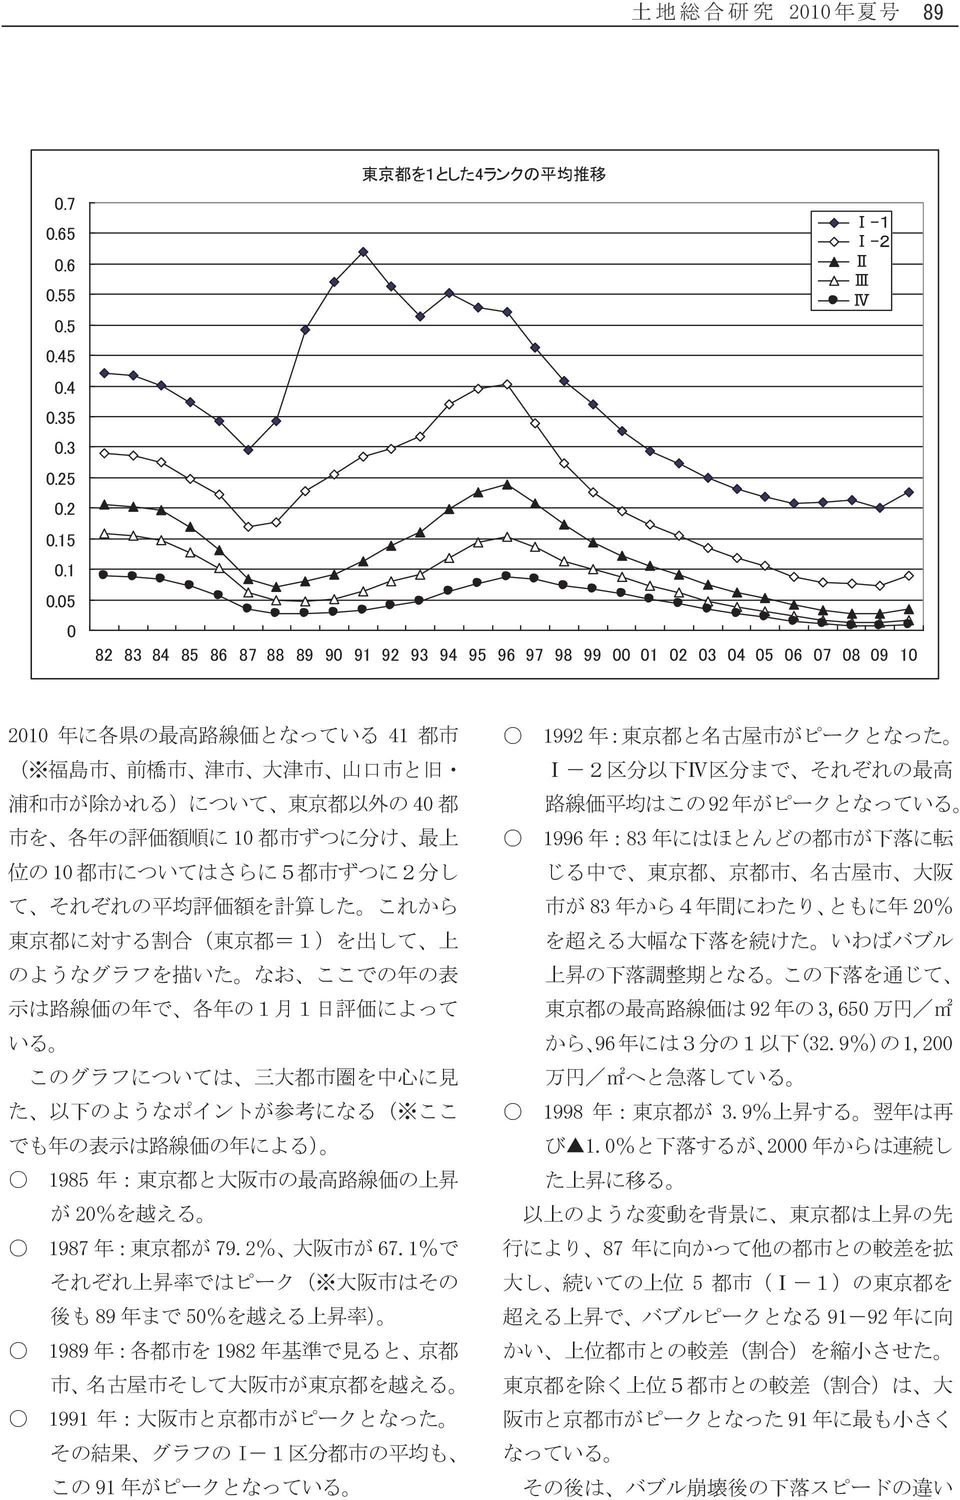 と 旧 浦 和 市 が 除 かれる)について 東 京 都 以 外 の 40 都 市 を 各 年 の 評 価 額 順 に 10 都 市 ずつに 分 け 最 上 位 の 10 都 市 についてはさらに5 都 市 ずつに2 分 し て それぞれの 平 均 評 価 額 を 計 算 した これから 東 京 都 に 対 する 割 合 ( 東 京 都 =1)を 出 して 上 のようなグラフを 描 いた なお